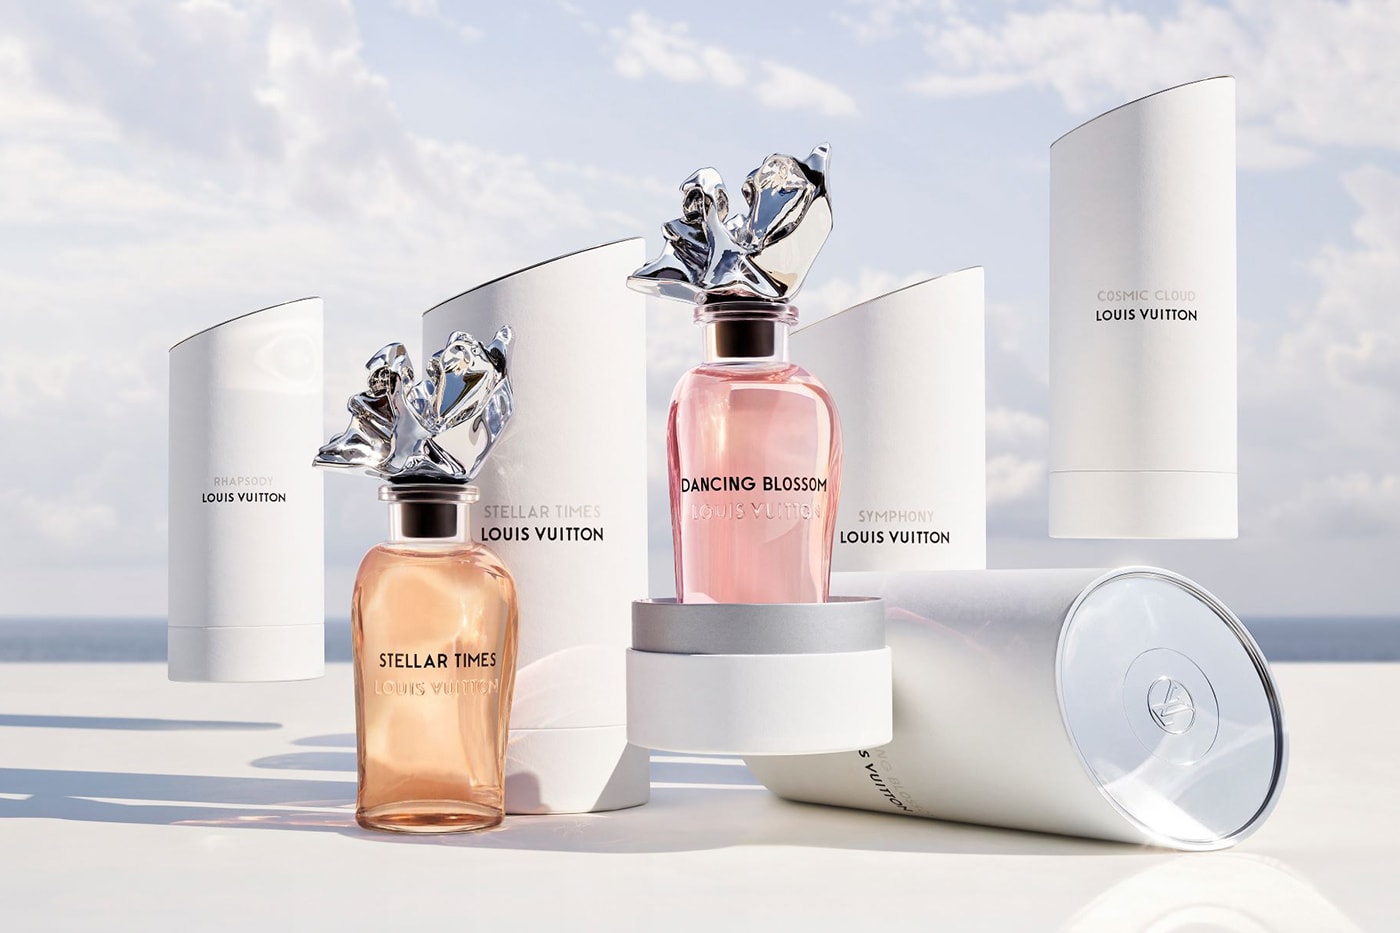 Louis Vuitton: Louis Vuitton Presents Its New Pacific Chill Parfum